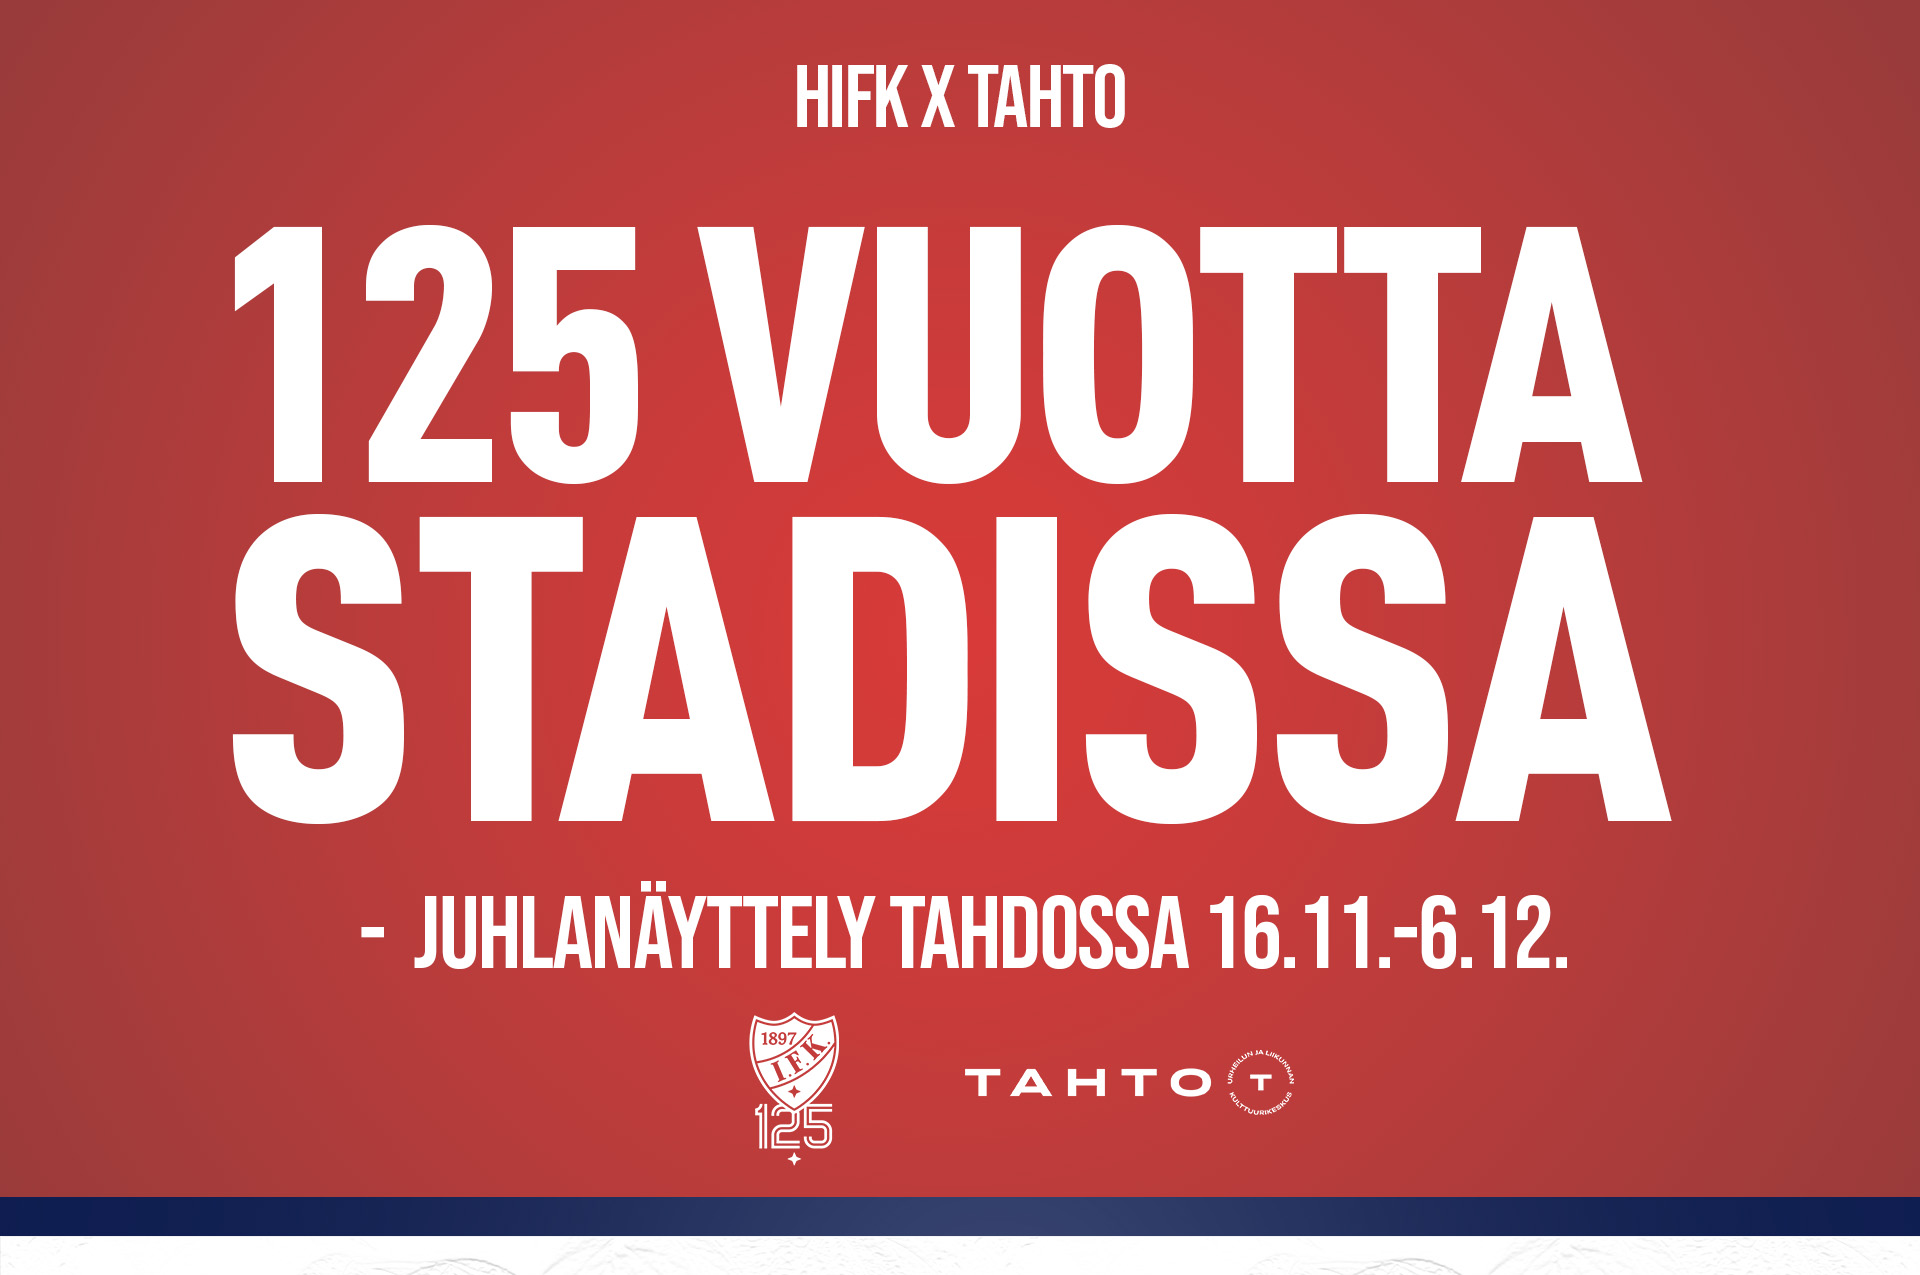 HIFK 125 år i Stadin -jubileumsutställning på TAHTO